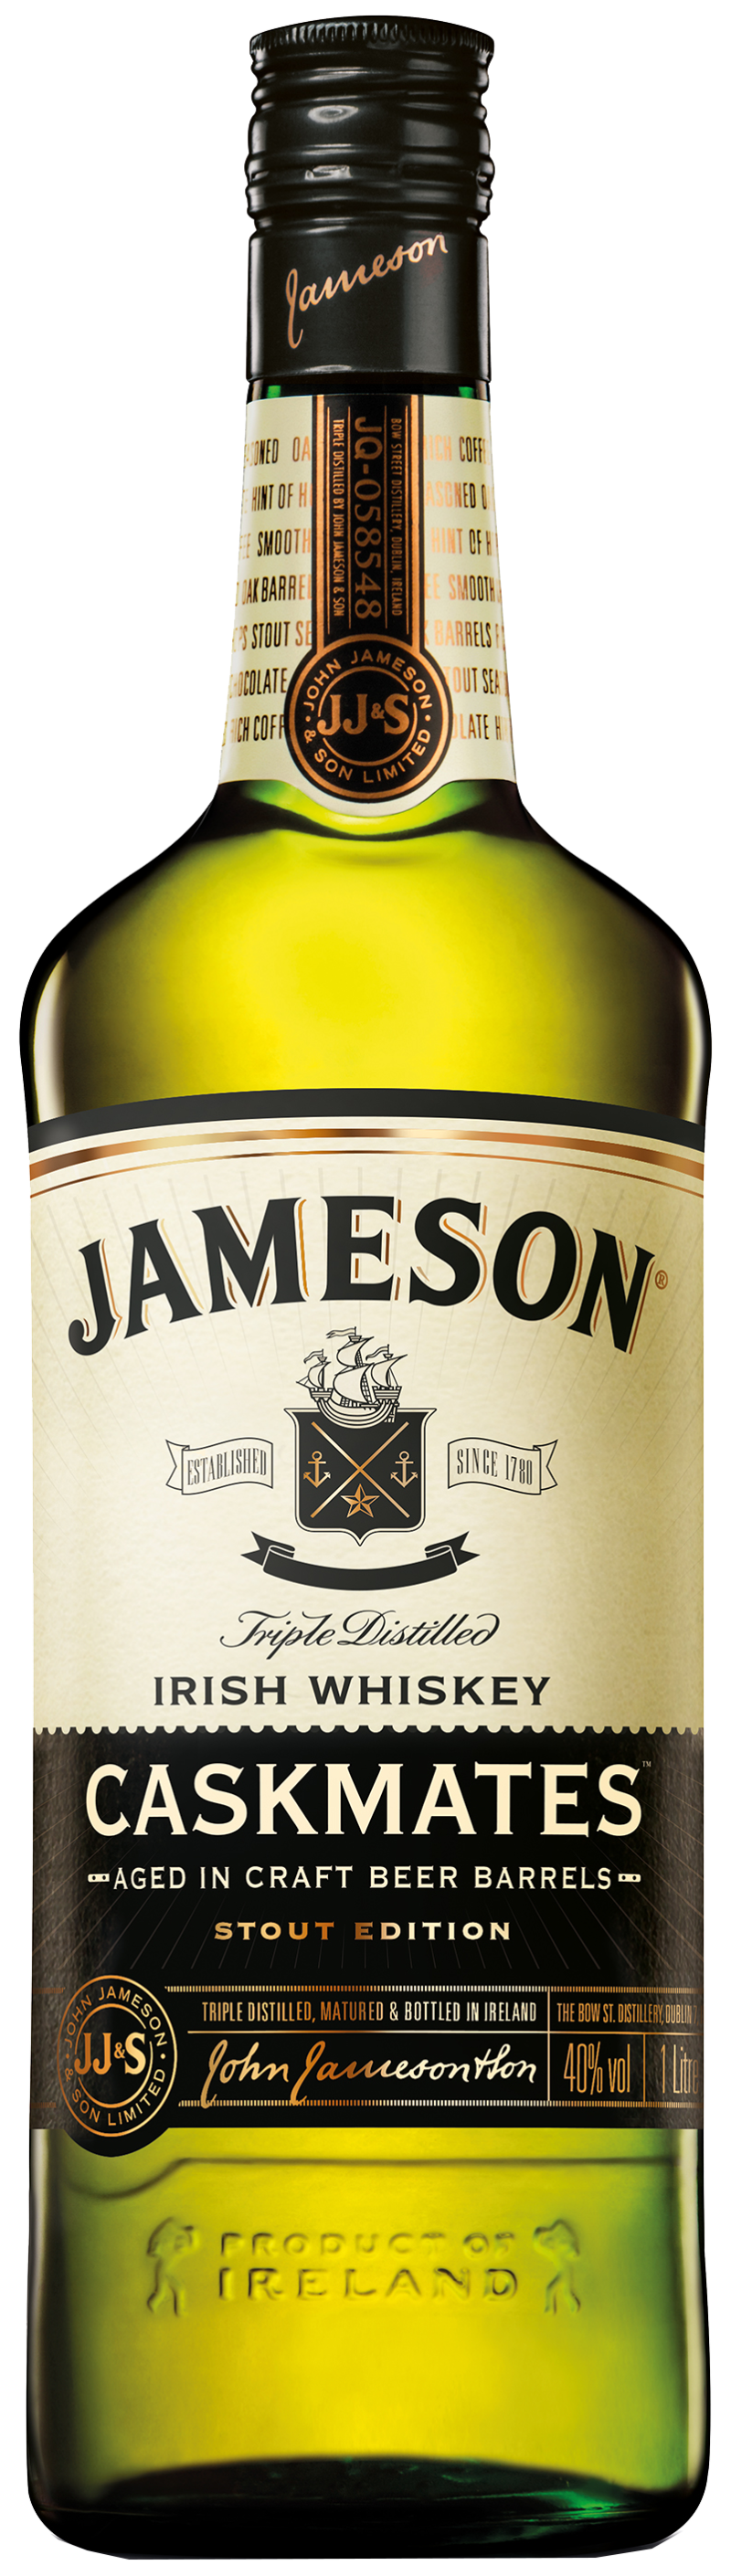 Jameson - Caskmates Stout Edition 100 cl 40% vol